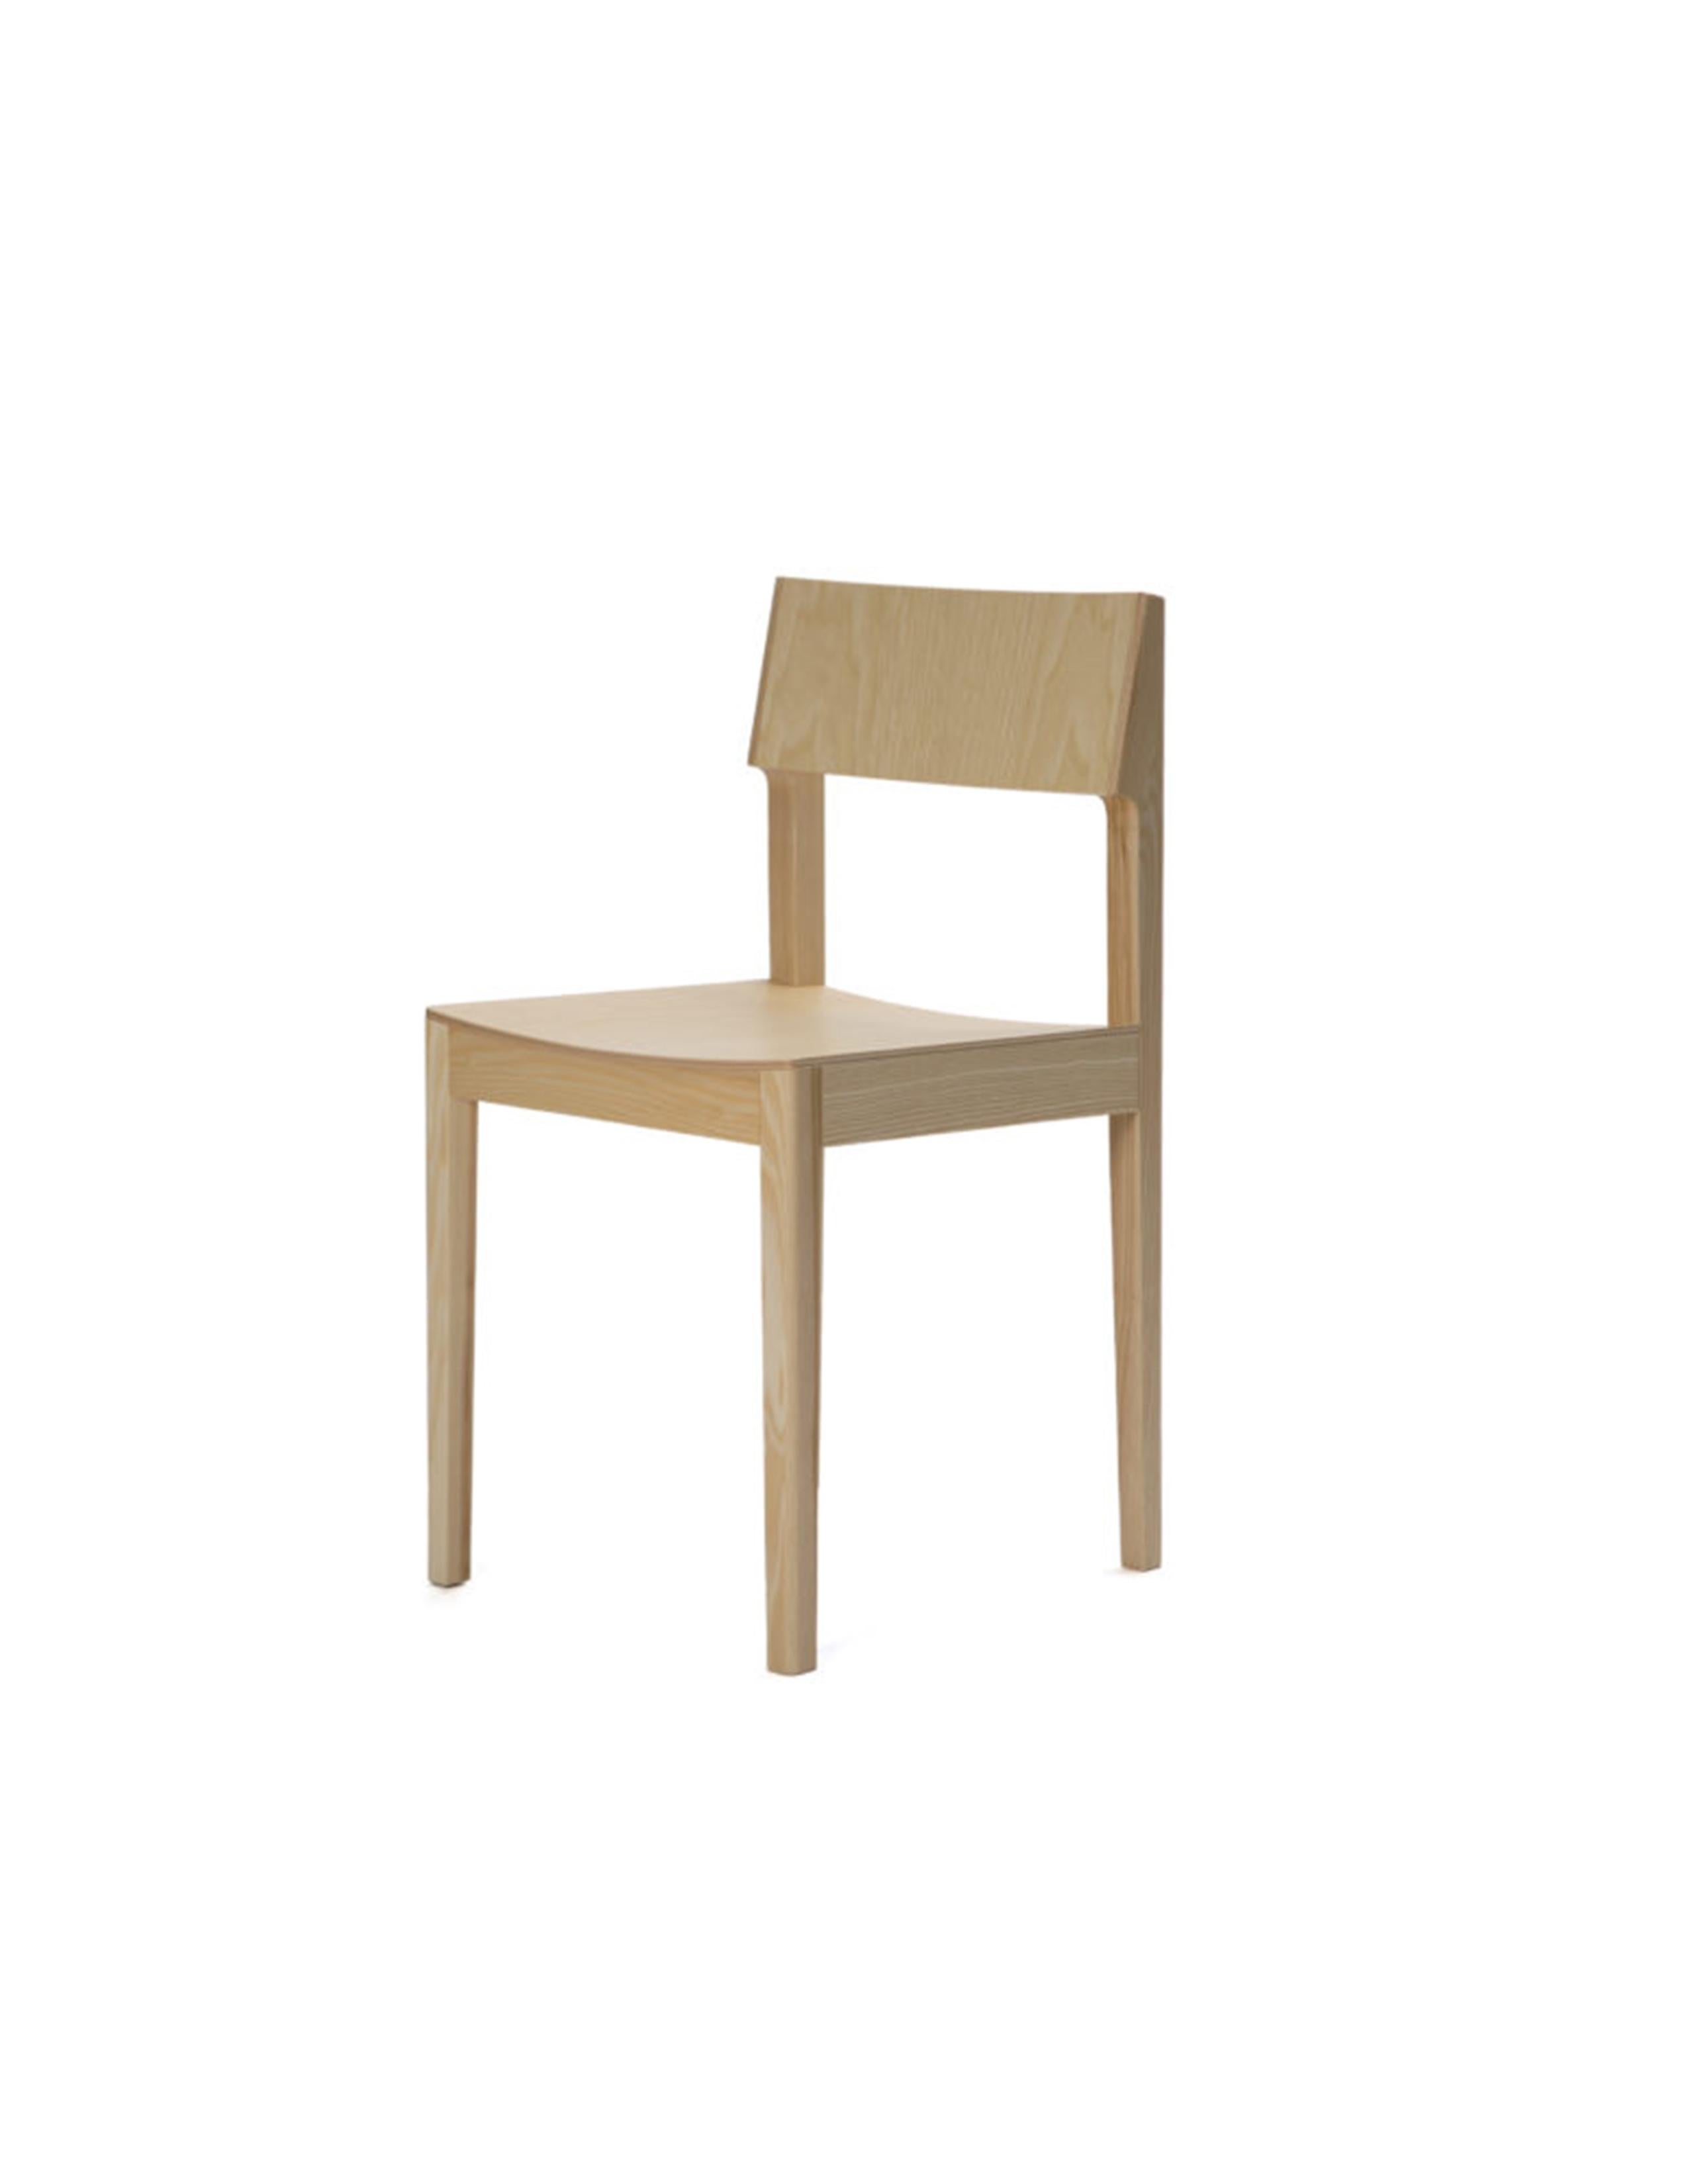 Intro A1 est une chaise en bois polyvalente et légère qui convient aussi bien aux restaurants qu'aux hôtels ou aux salles à manger domestiques. Il est compact et empilable et présente une excellente ergonomie. Avec une forme simple et directe, le